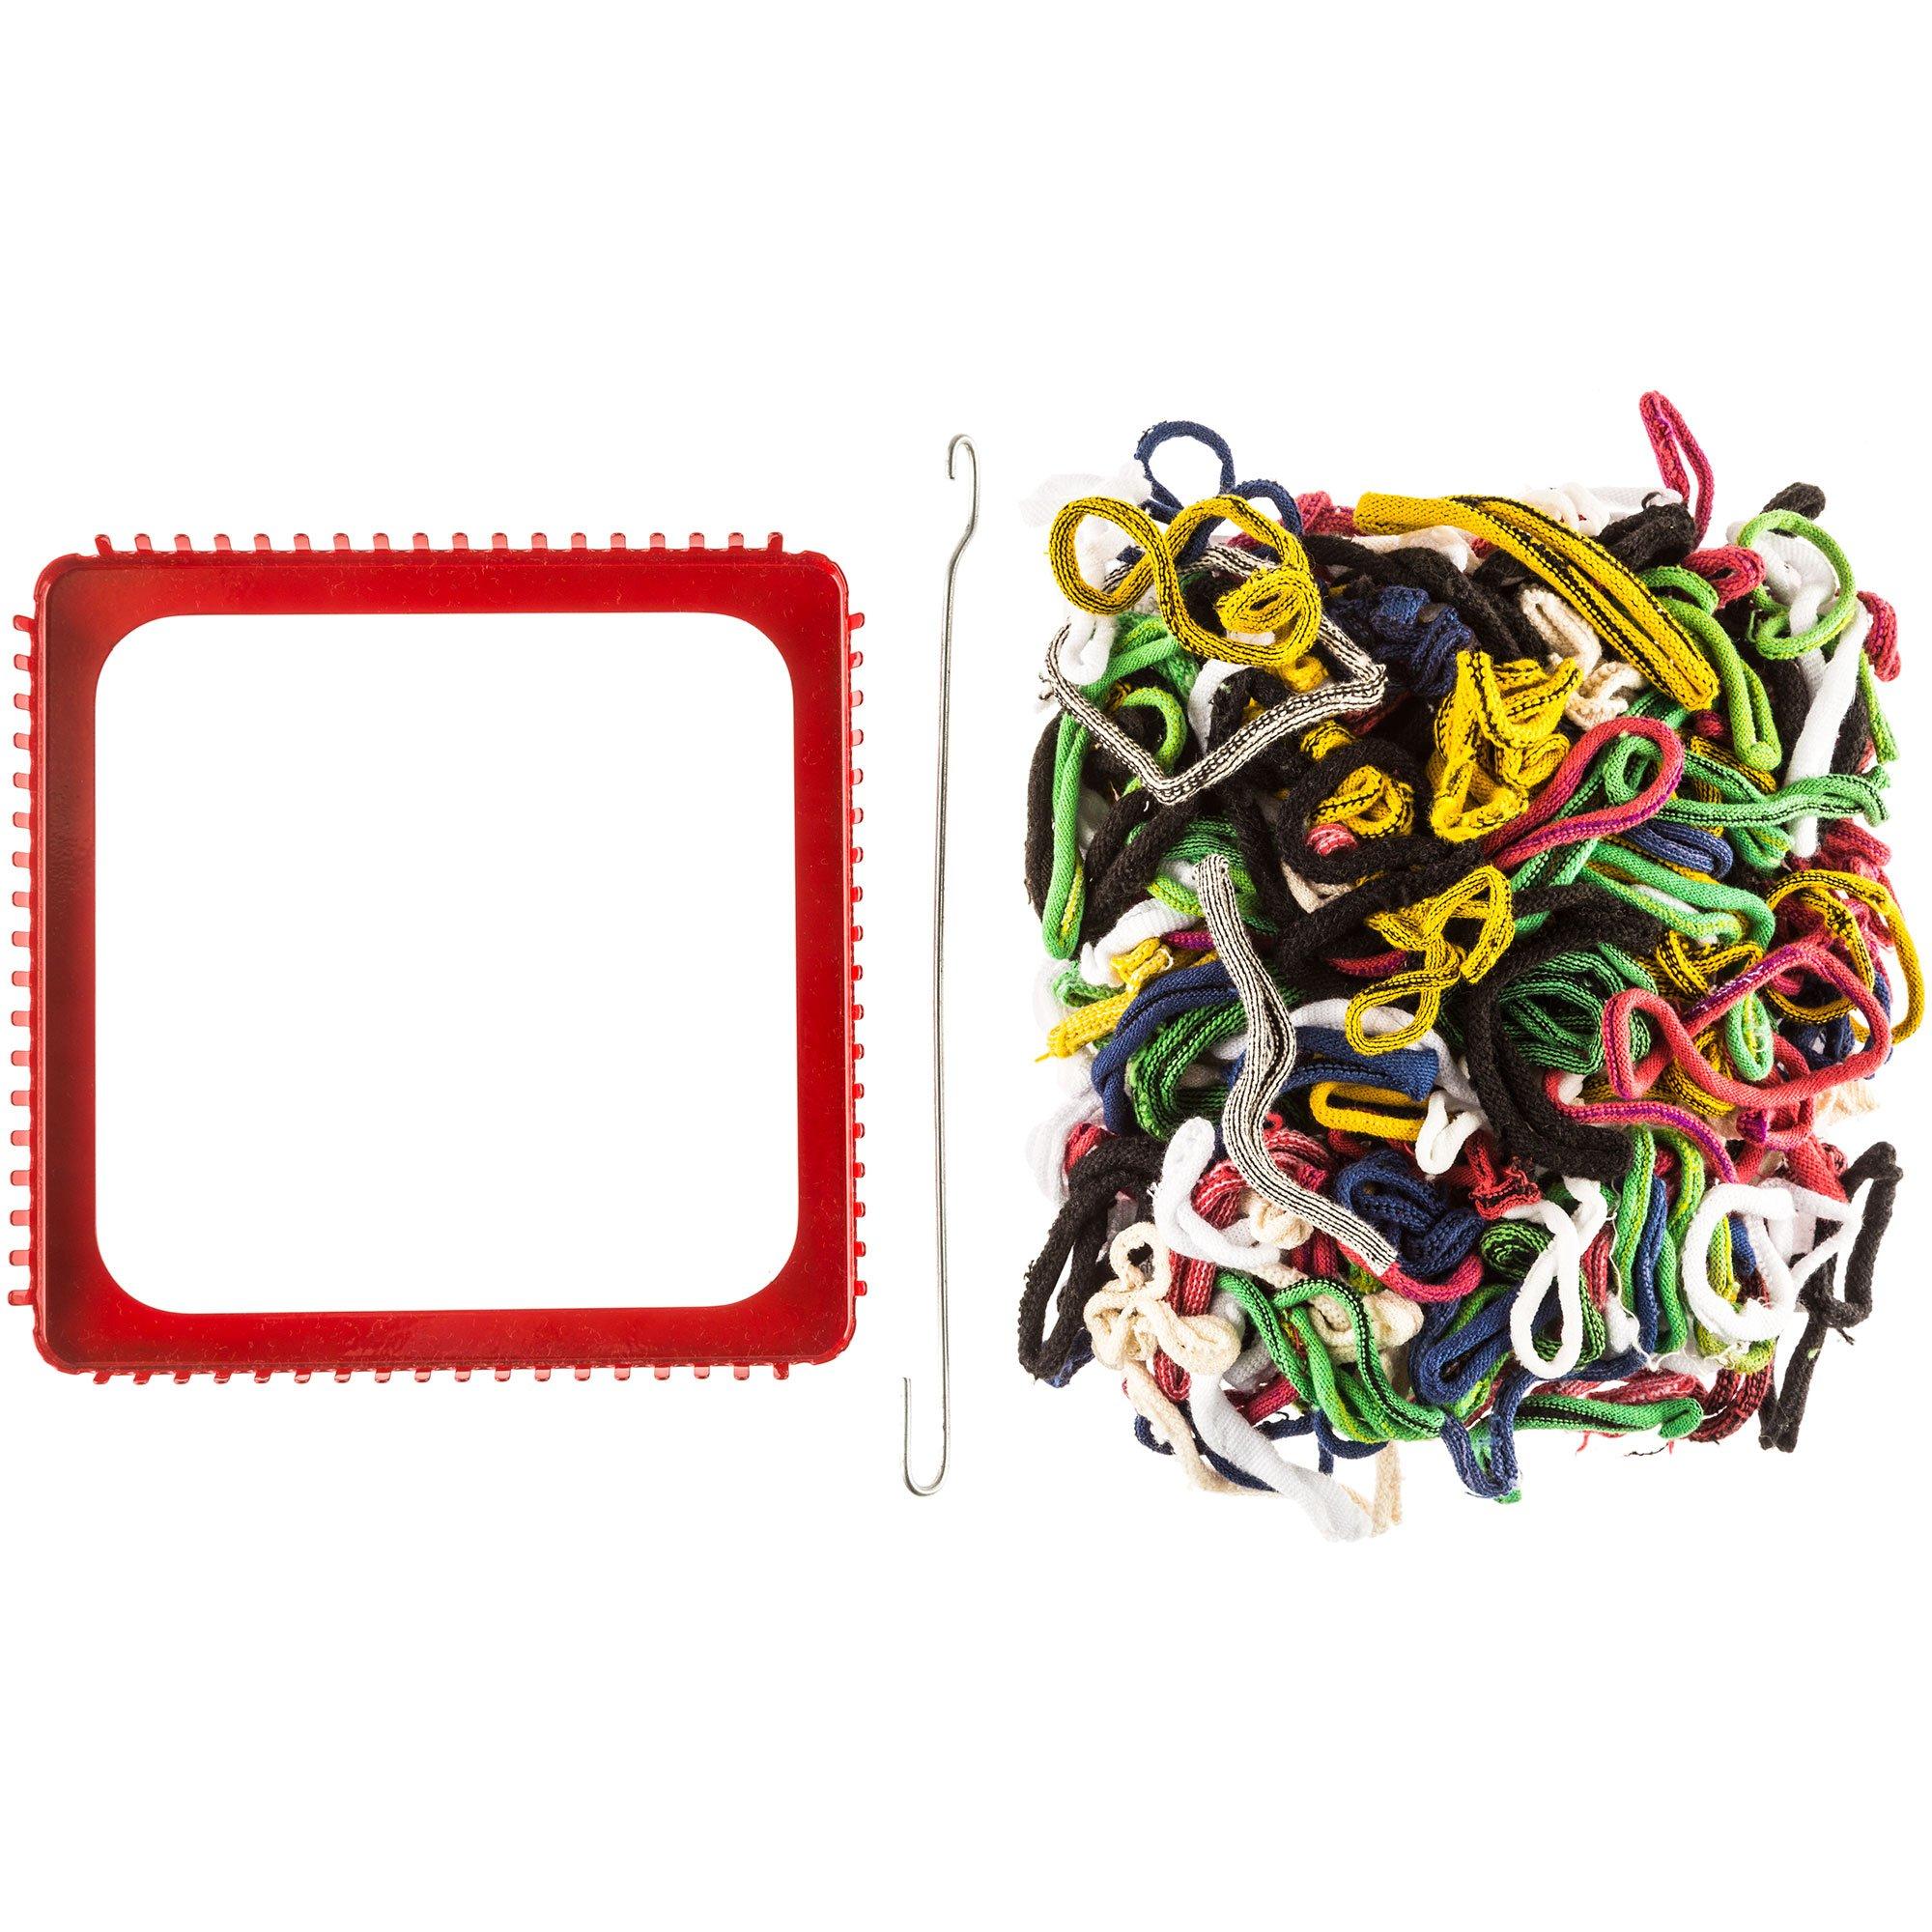 Metal Pot Holder Loom : Refill Kit for One Por Holder : Childrens